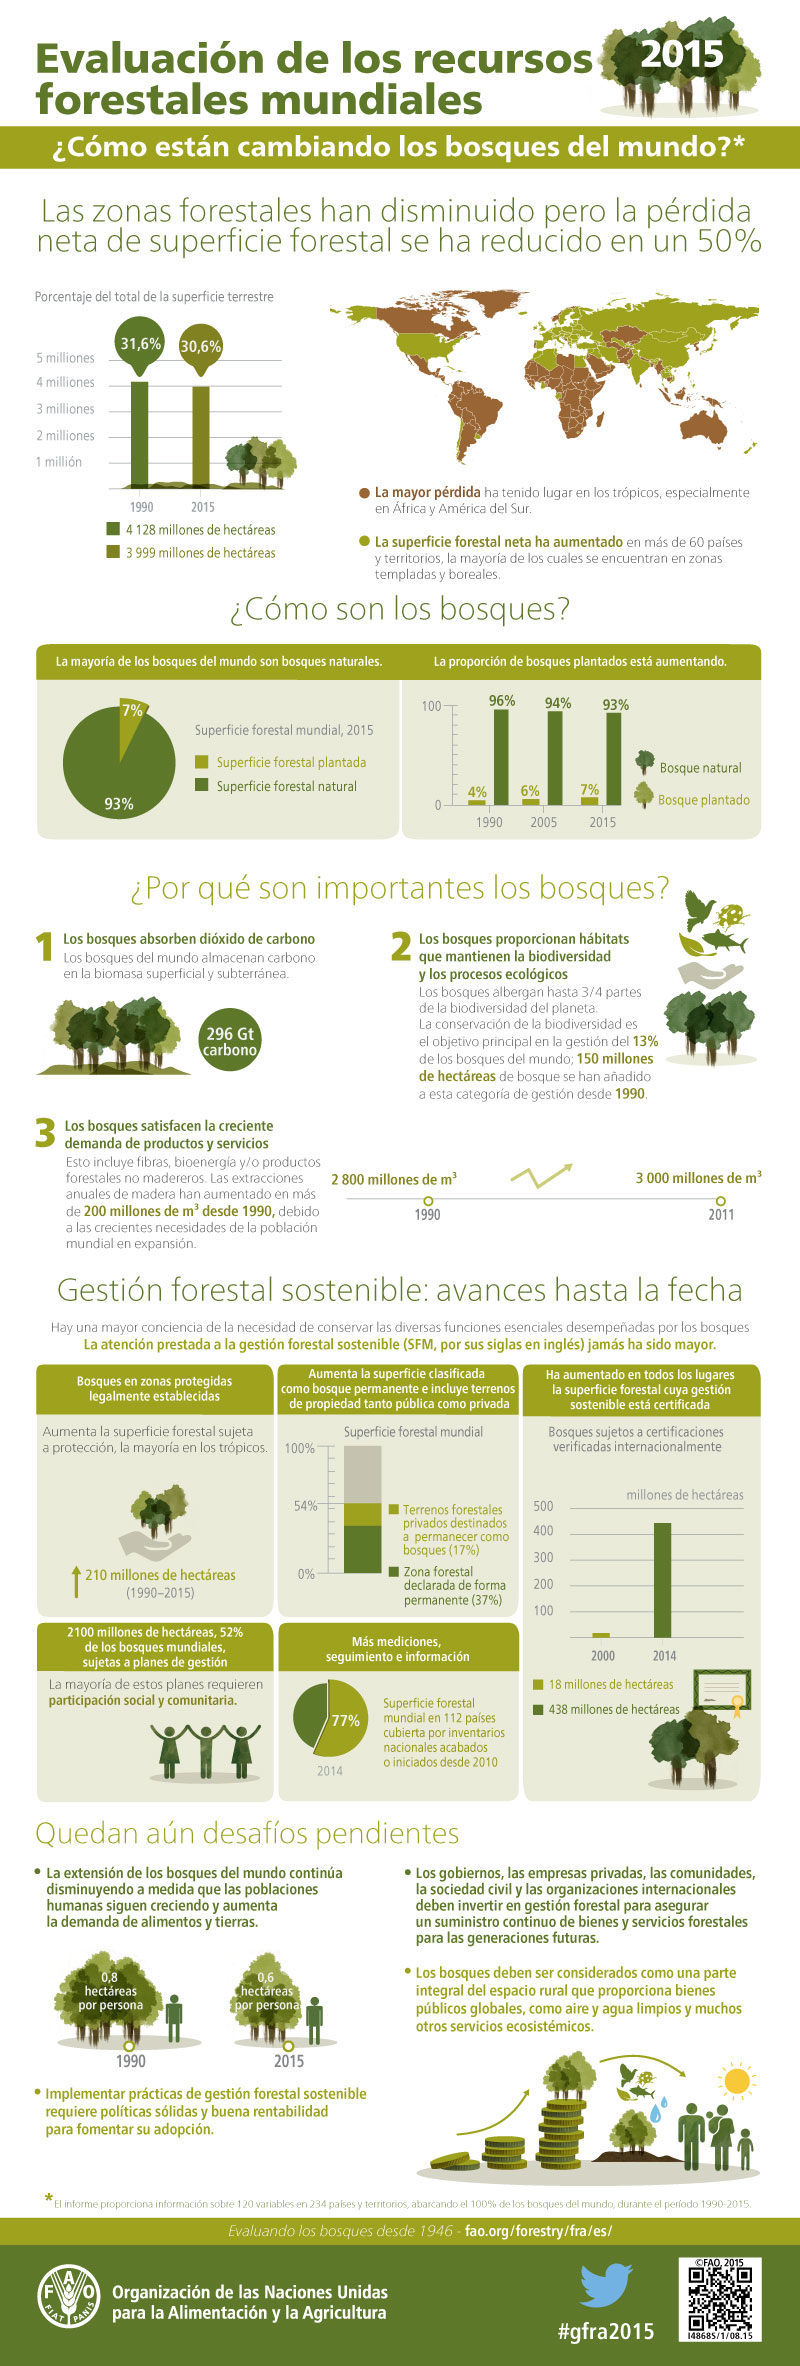 La deforestación se ralentiza a nivel mundial según la FAO, con más bosques mejor gestionados